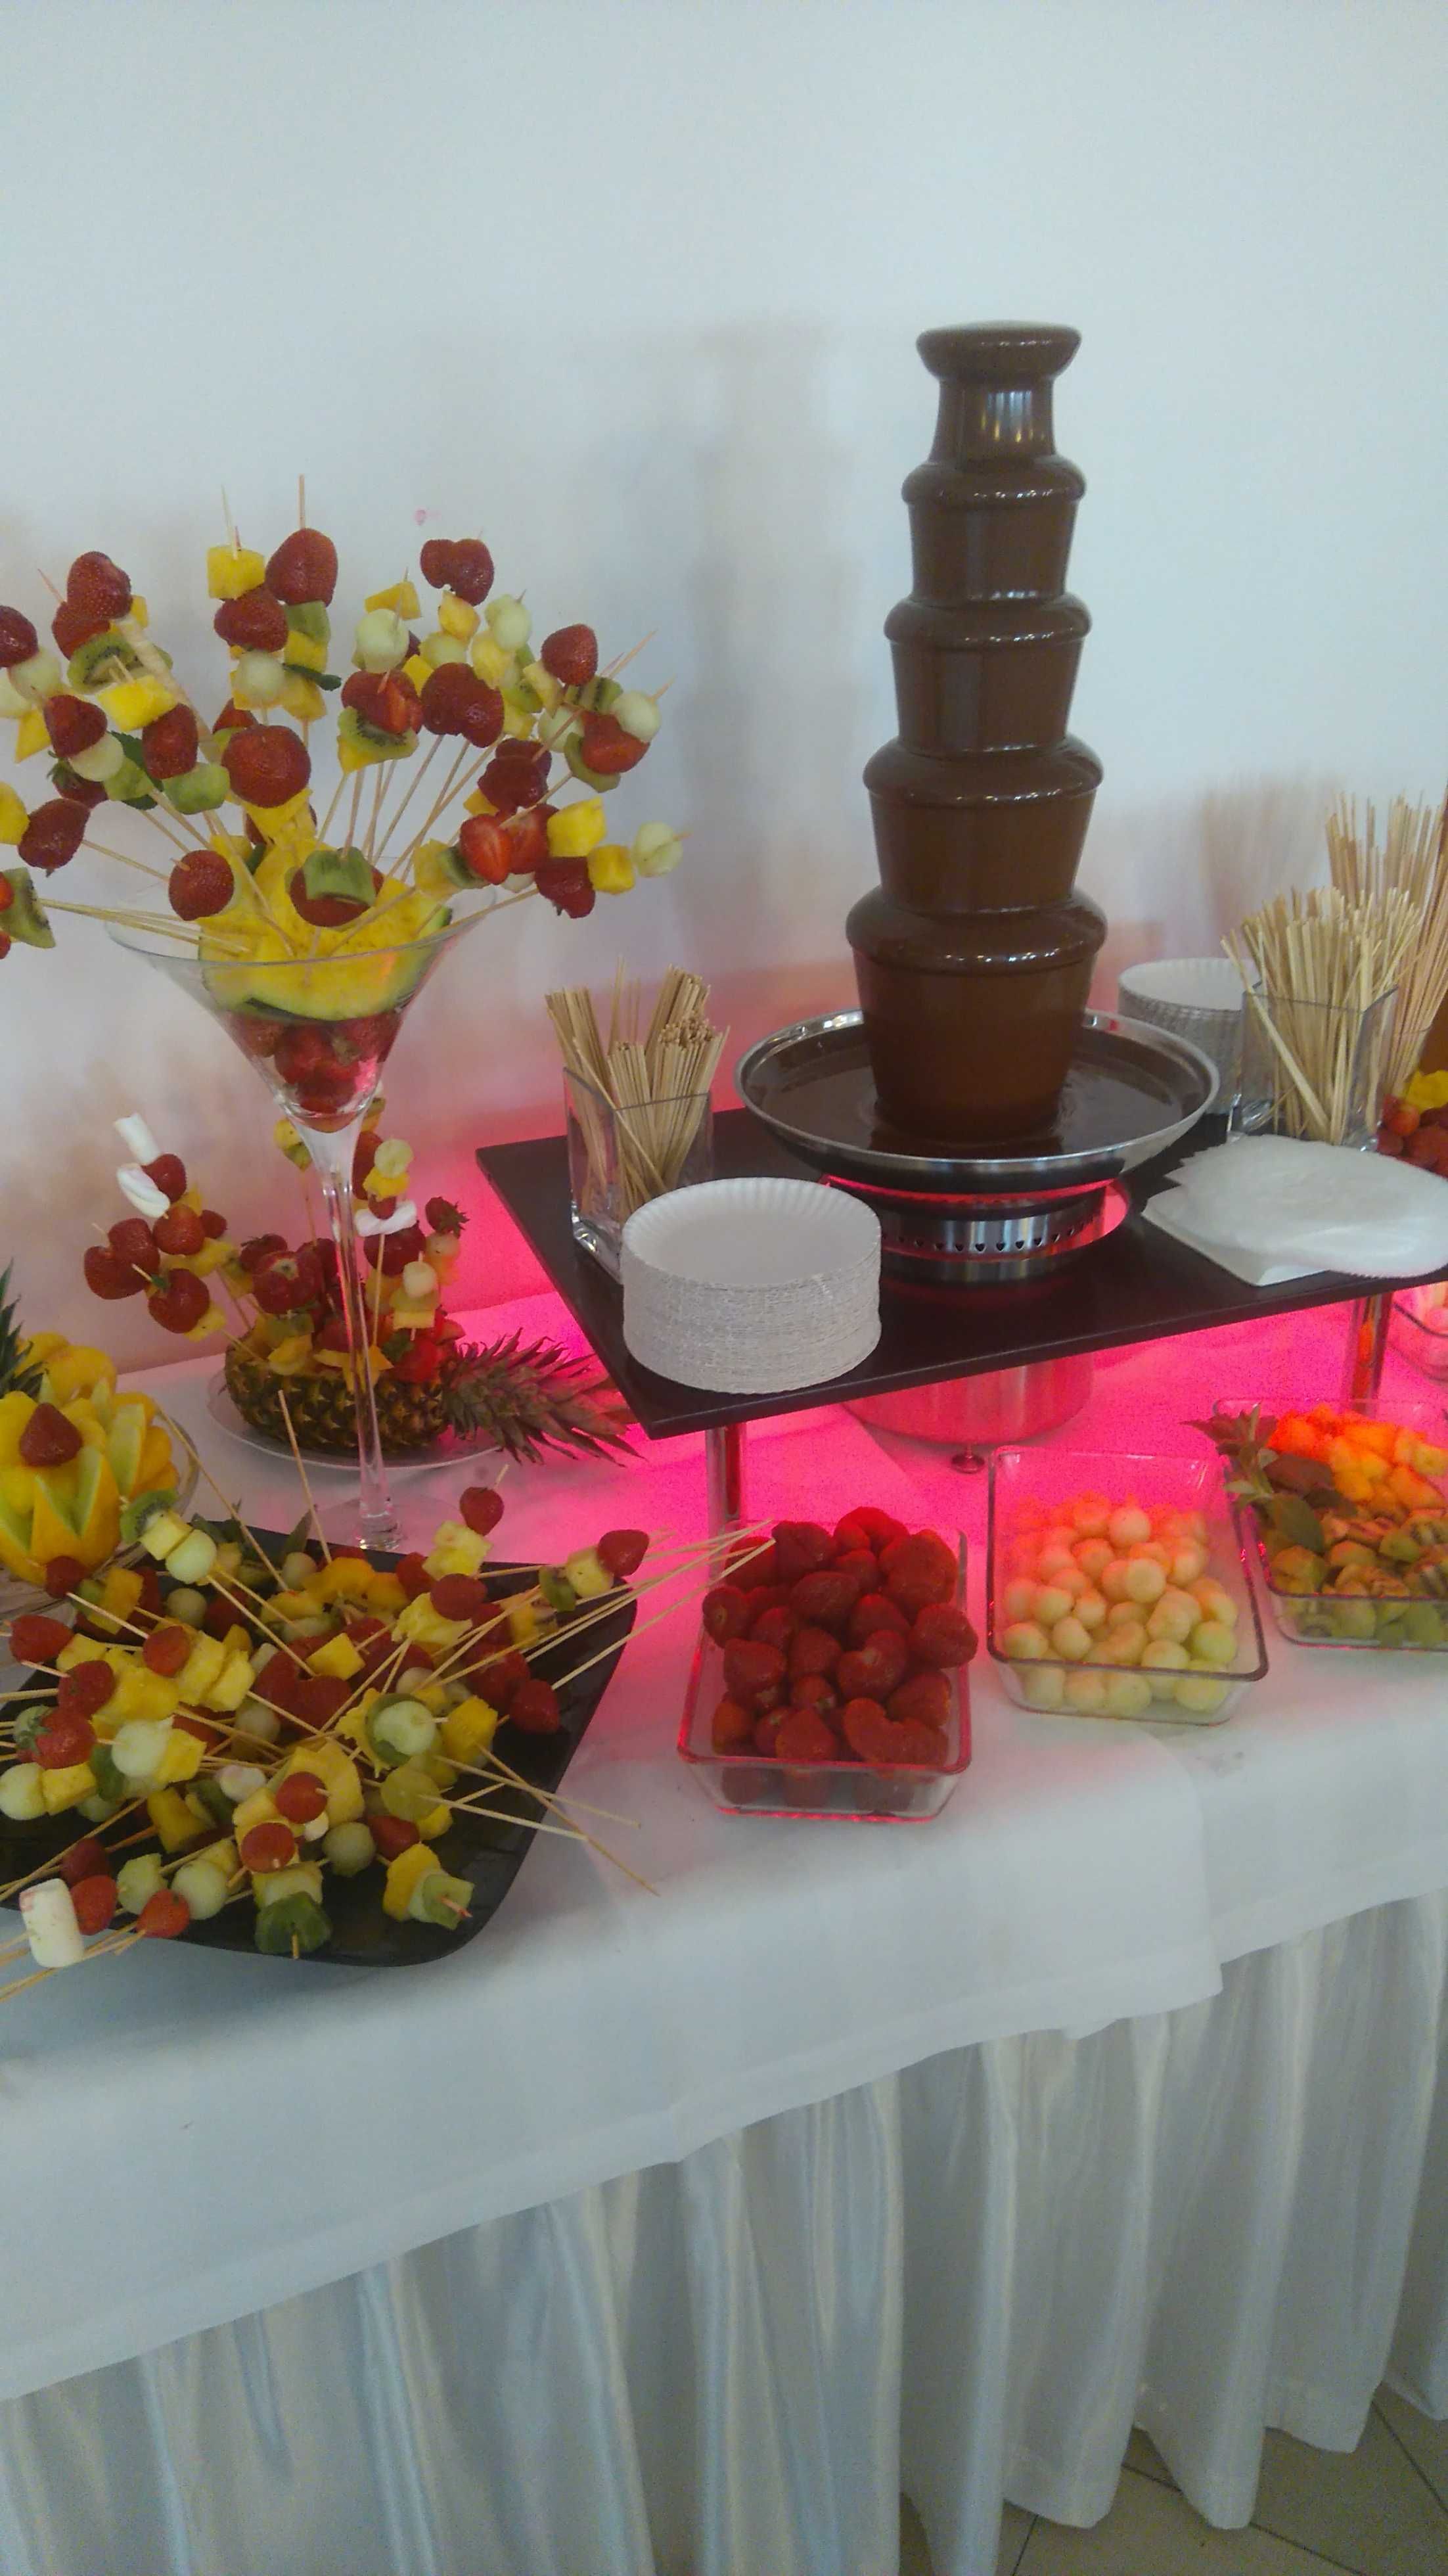 fontanna czekoladowa słodki stół czekolady komunia wesele bal atrakcje